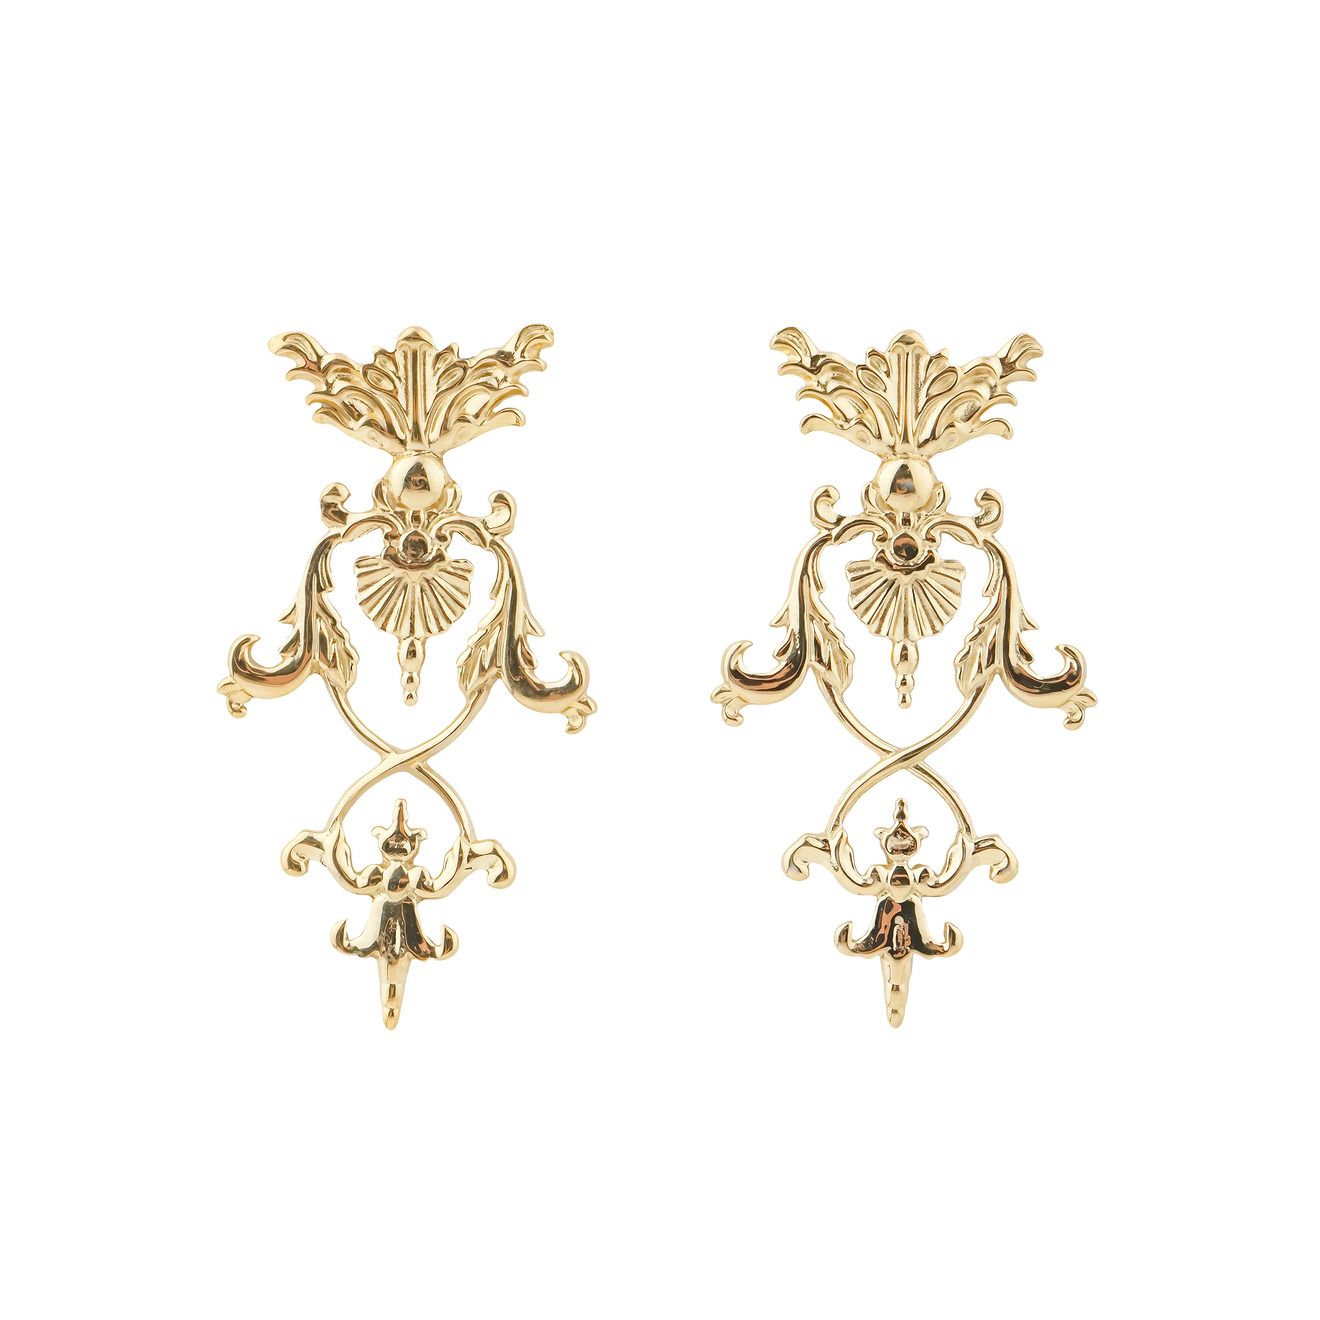 LUTA Jewelry Позолоченные серебряные серьги в барочном стиле серьги серебряные luta в барочном стиле 2 шт